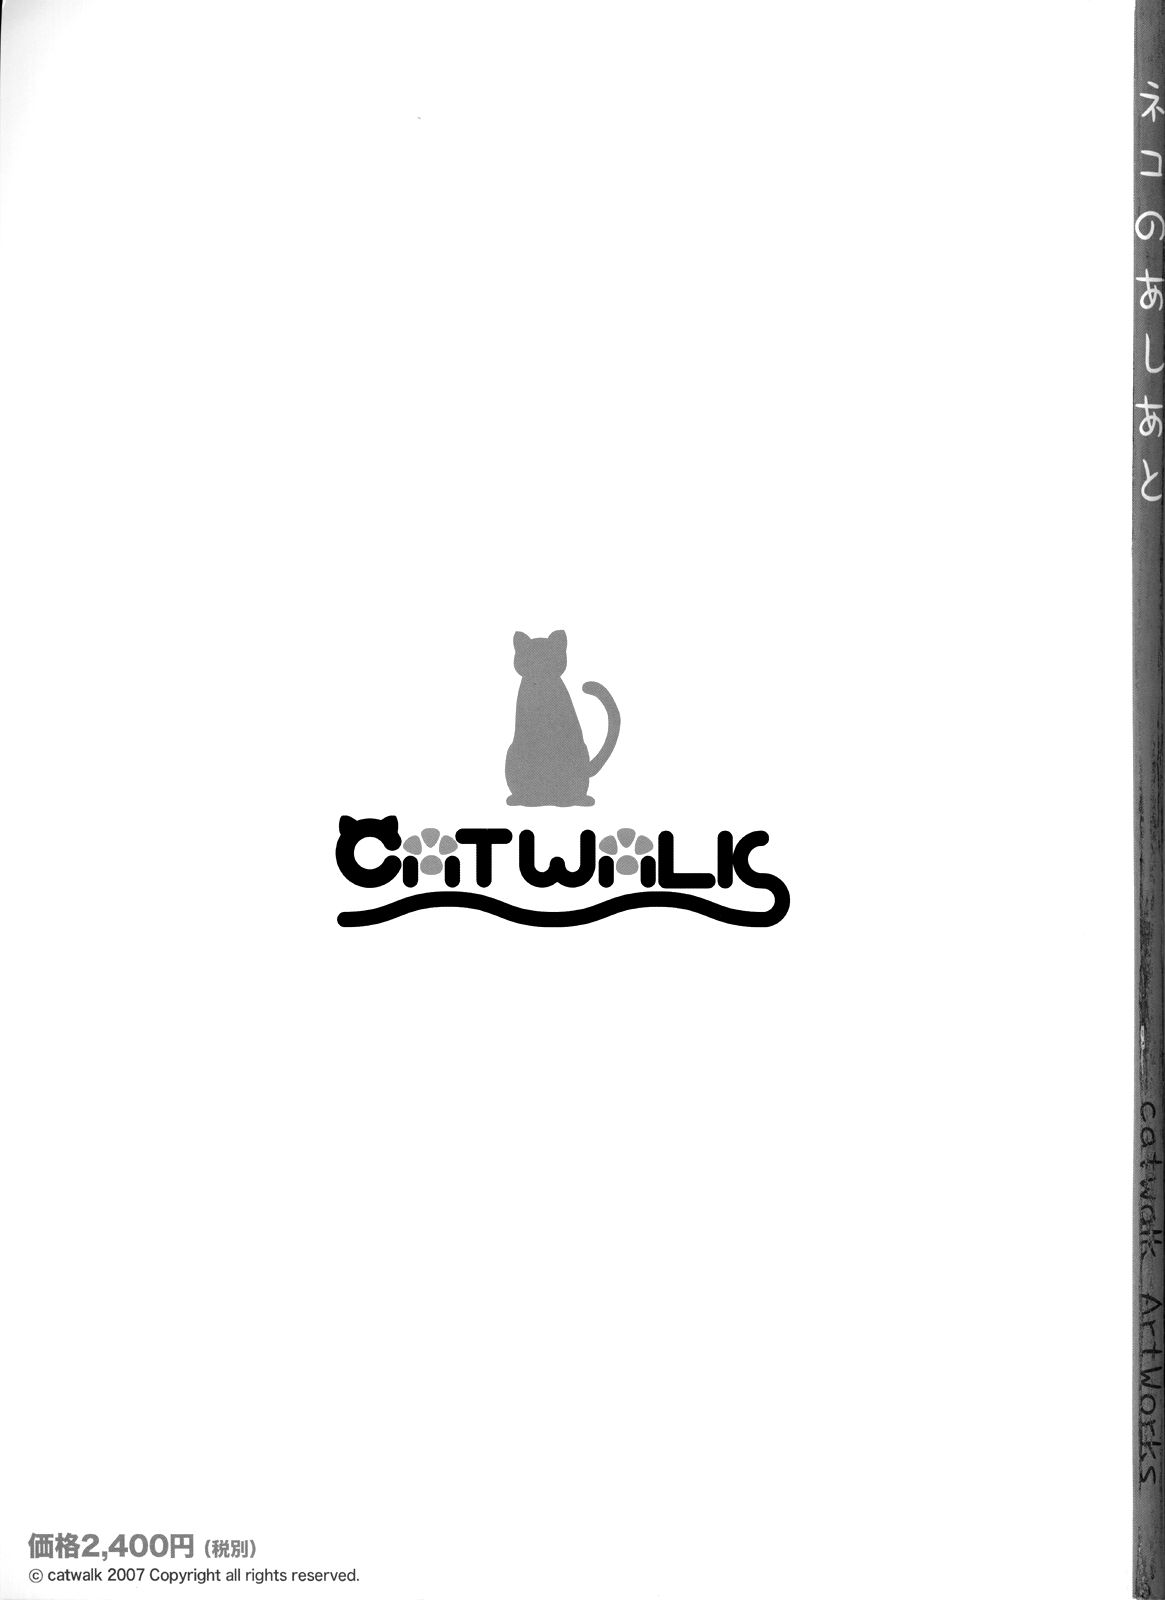 [神奈月昇] catwalk ArtWorks -ネコのあしあと-